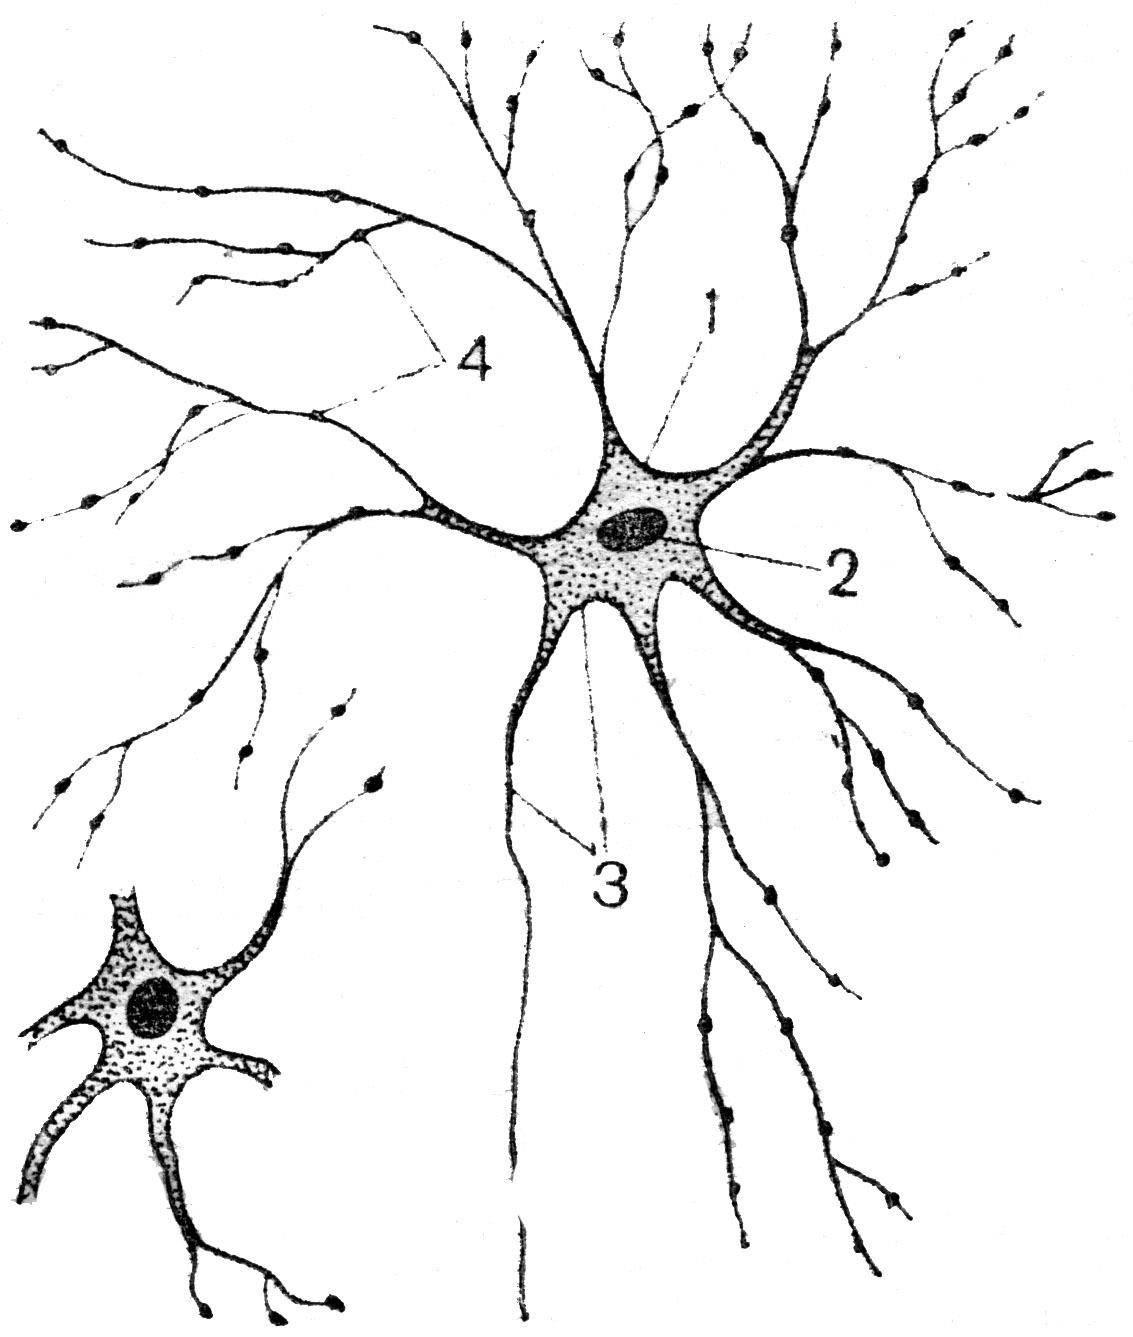 Мультиполярные нервные клетки и нервные волокна сетчатки глаза